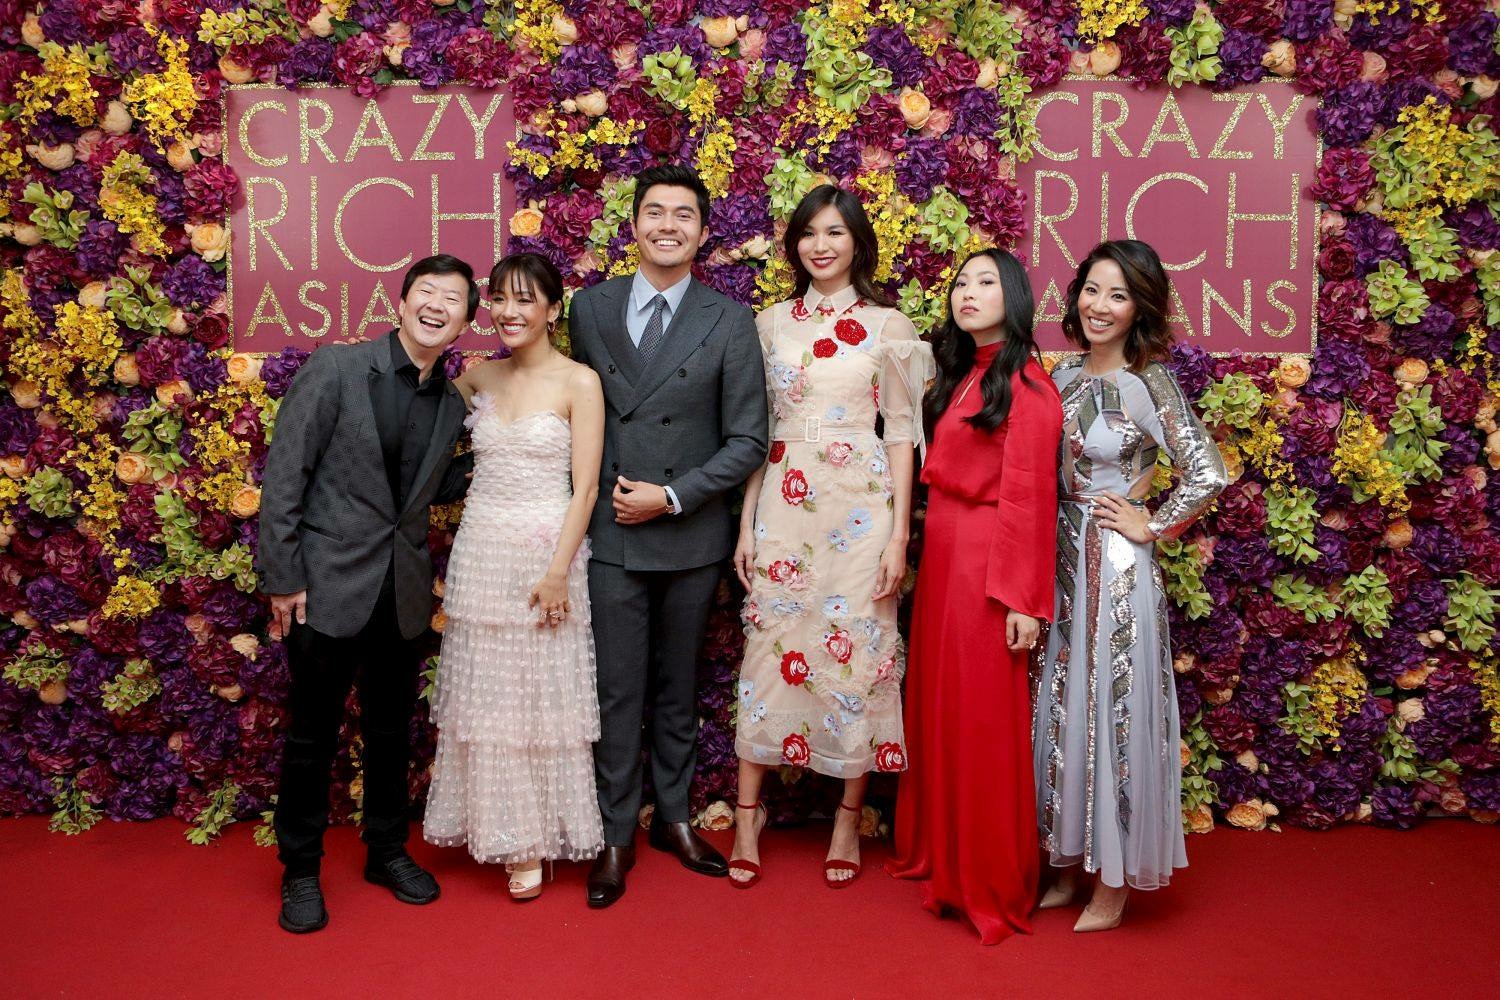 crazy rich asians uk premiere cast